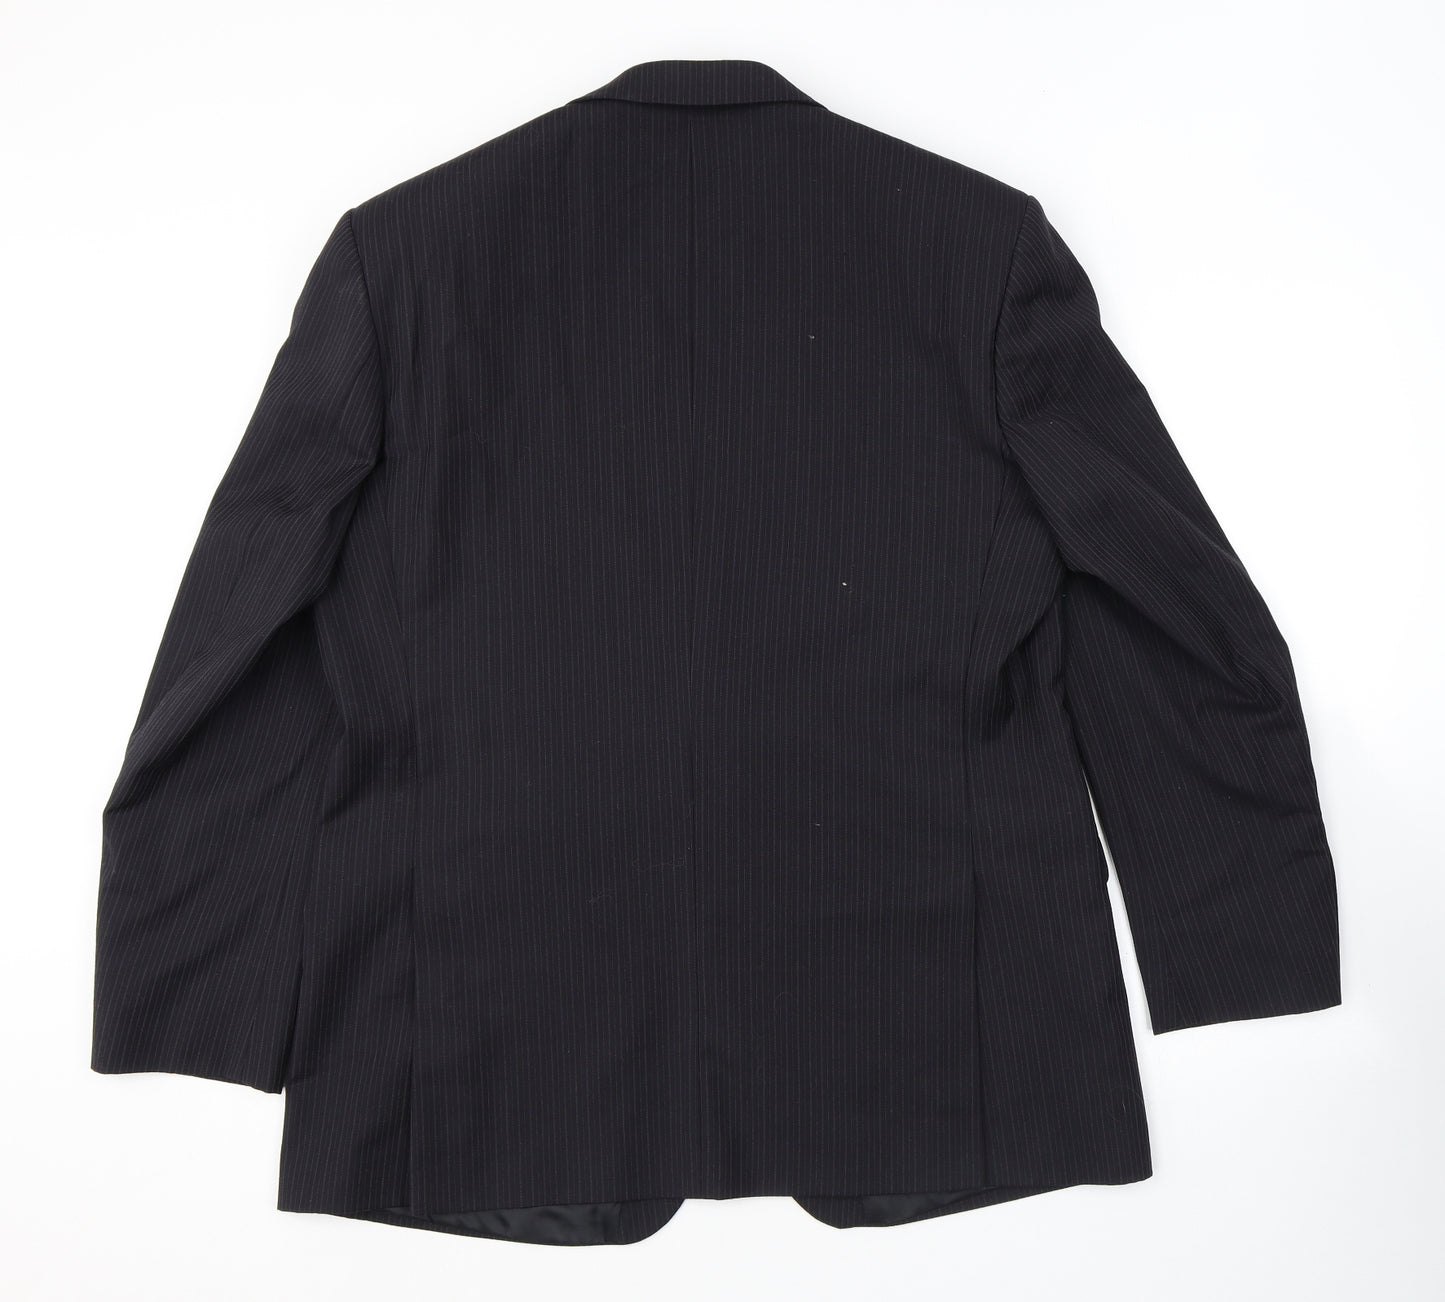 Karl Jackson Mens Black Striped Polyester Jacket Suit Jacket Size 44 Regular